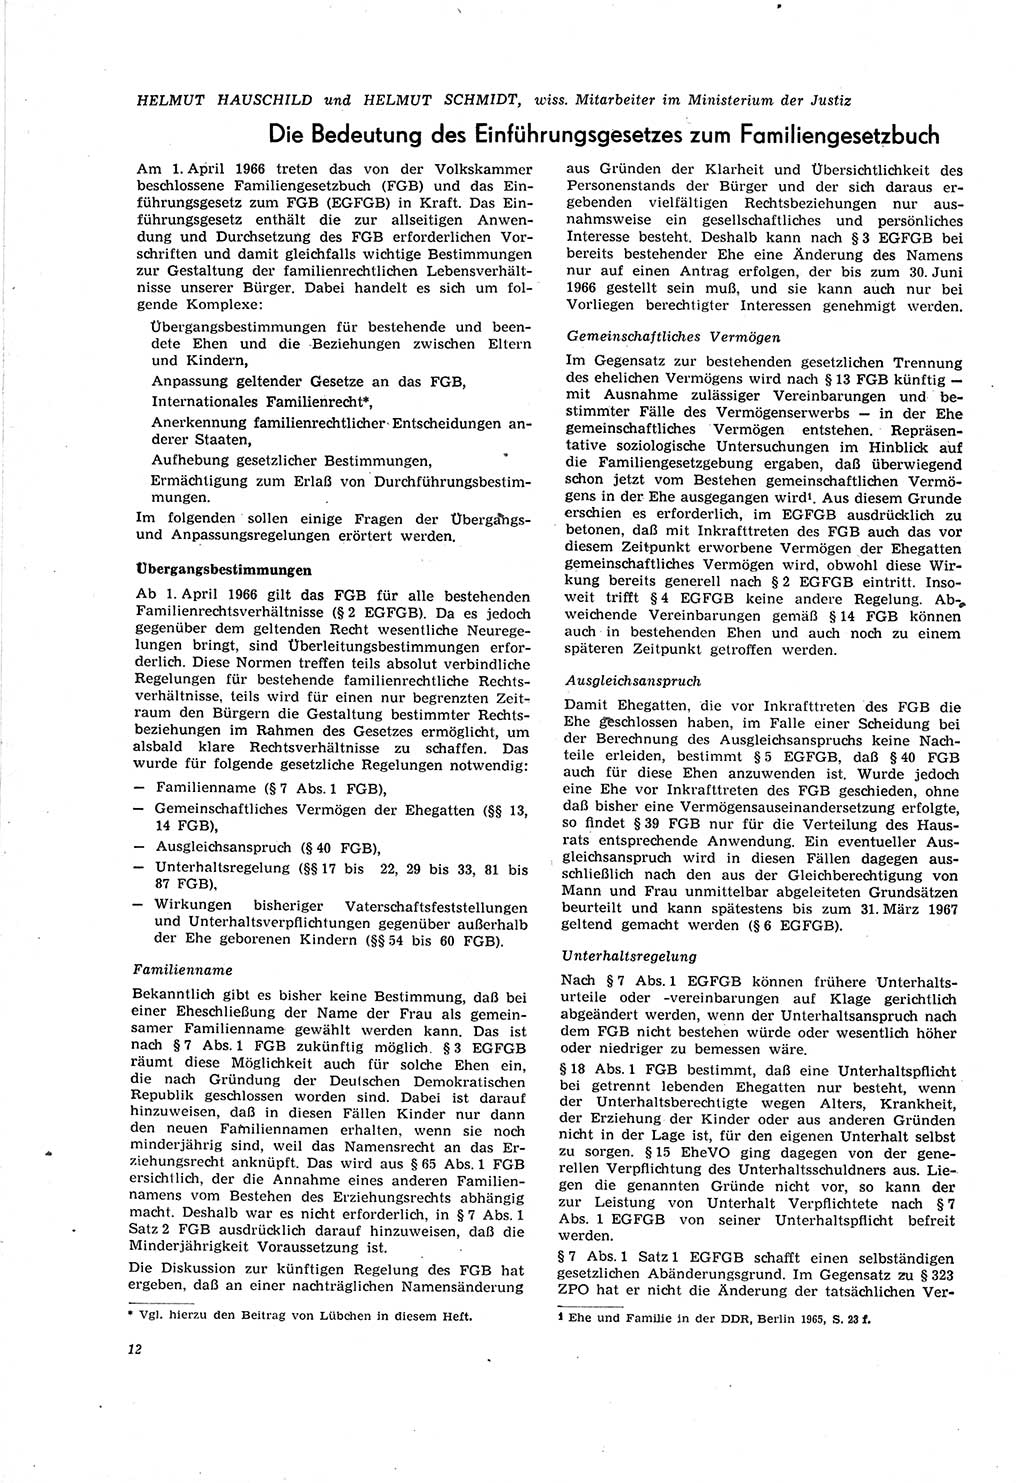 Neue Justiz (NJ), Zeitschrift für Recht und Rechtswissenschaft [Deutsche Demokratische Republik (DDR)], 20. Jahrgang 1966, Seite 12 (NJ DDR 1966, S. 12)